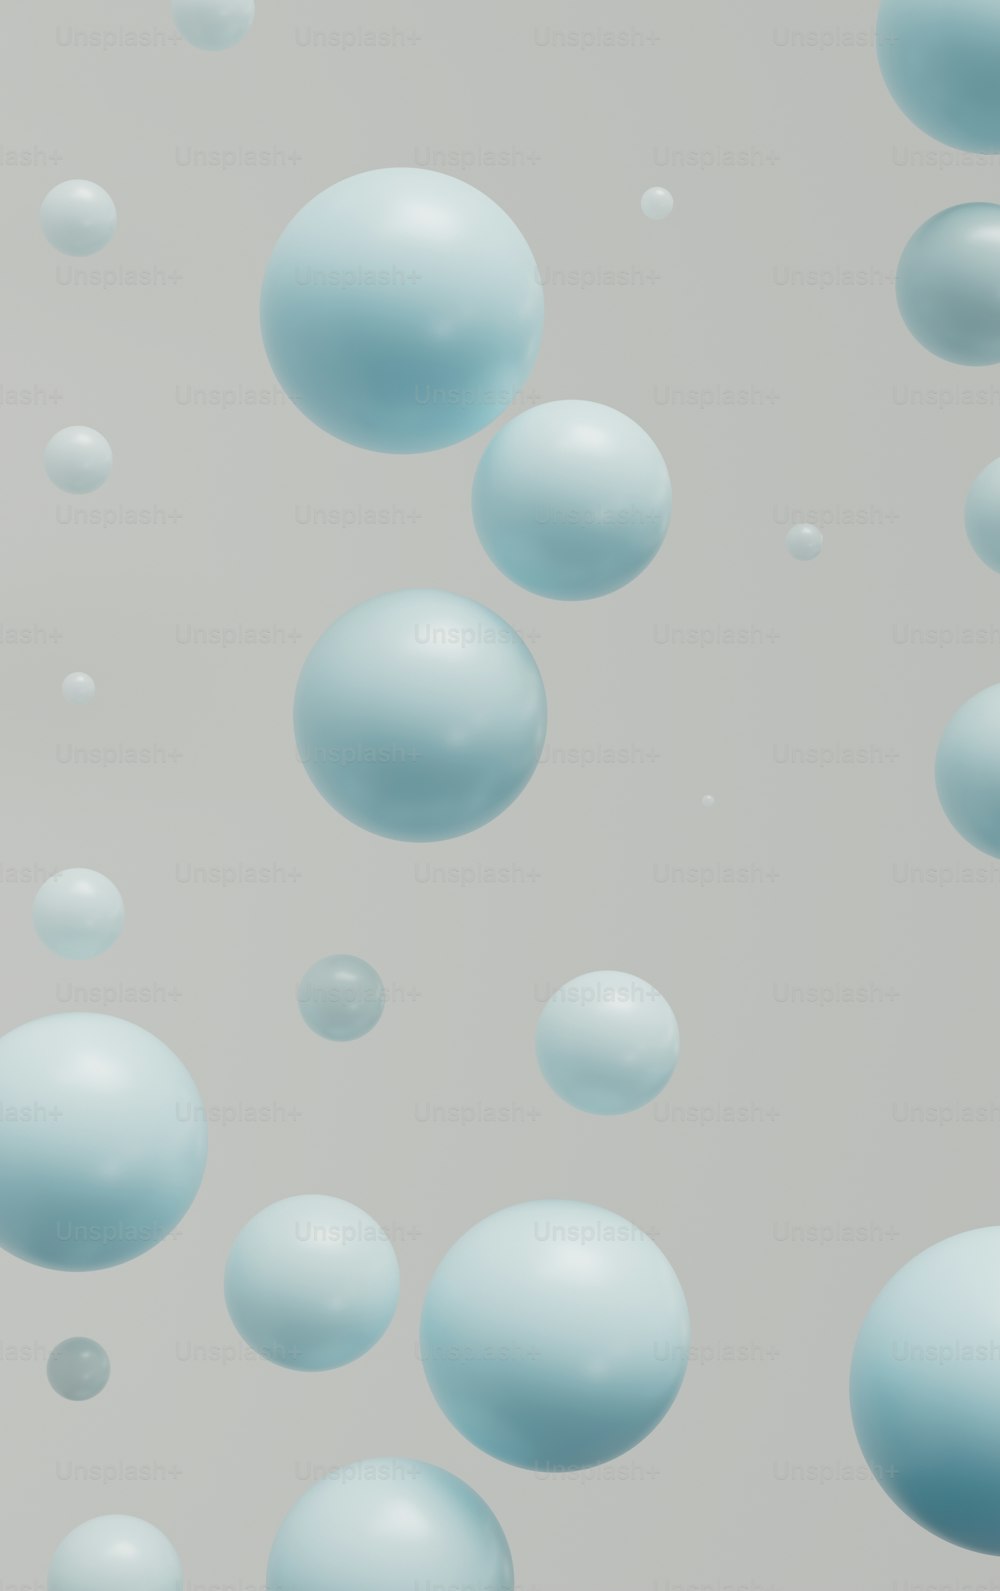 Un montón de burbujas flotando en el aire